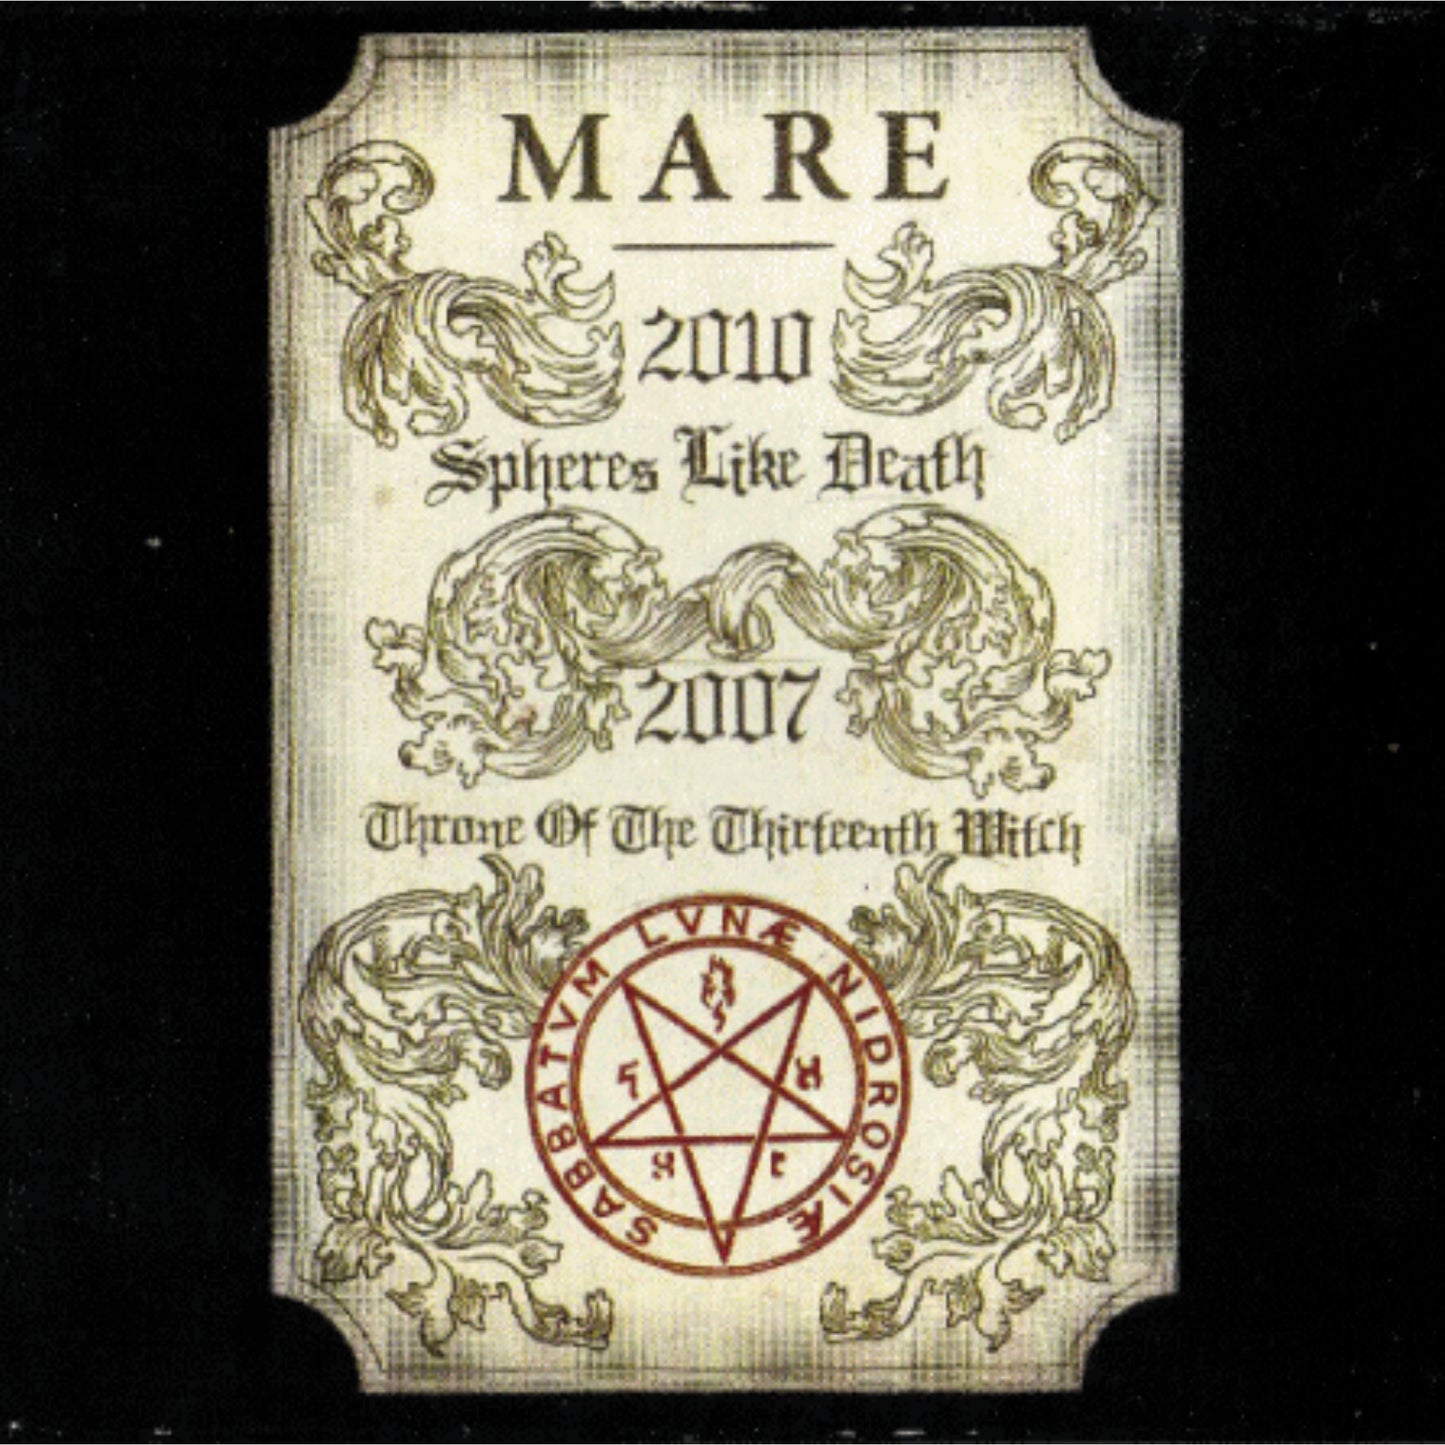 Mare - Spheres Like Death (Smoke Red Vinyl)